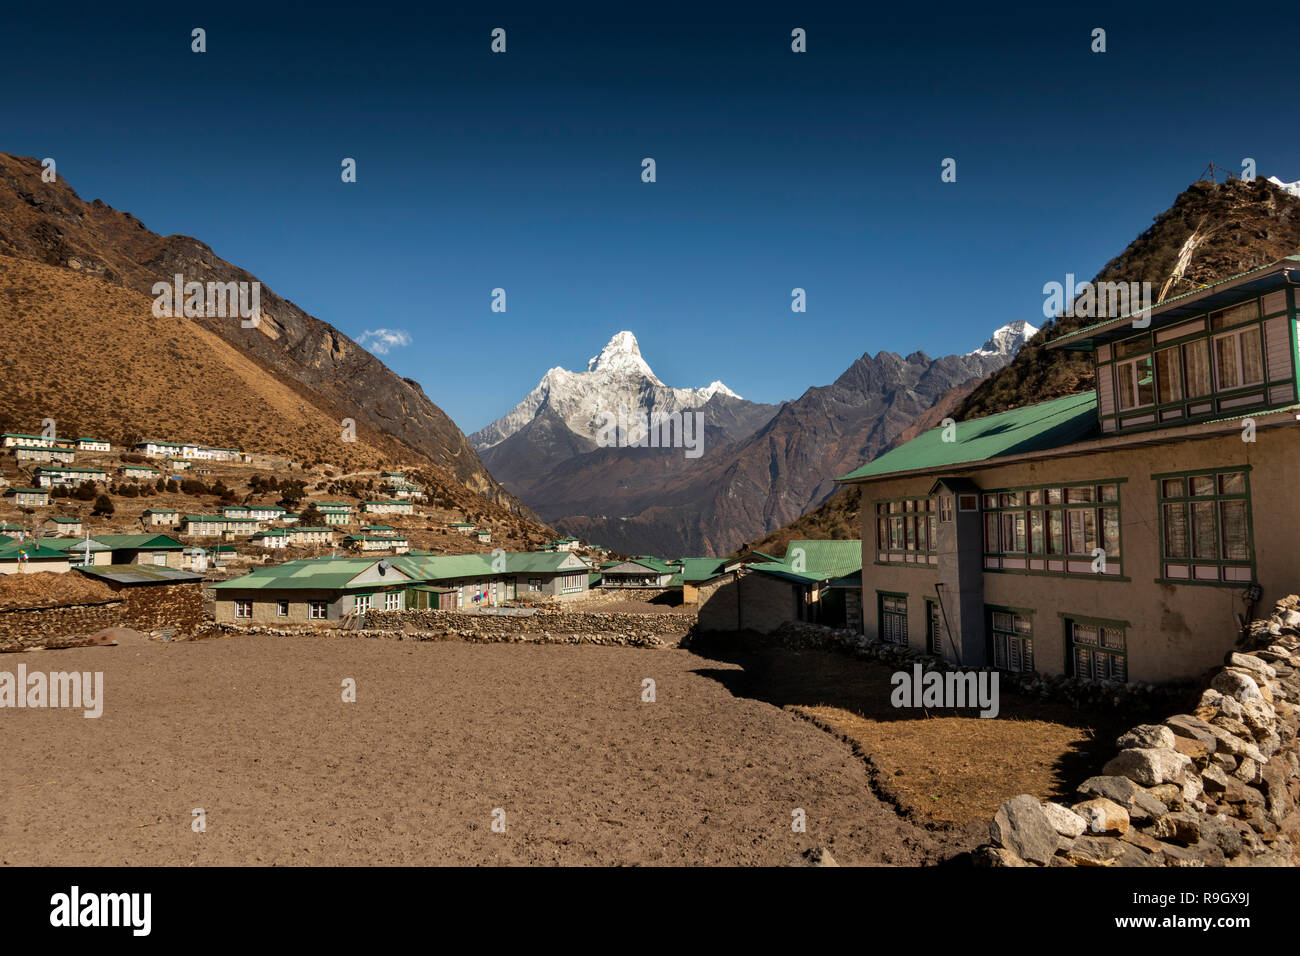 Il Nepal, il Campo Base Everest Trek, Khumjung, inverno, settore agricolo tra le case di villaggio Foto Stock